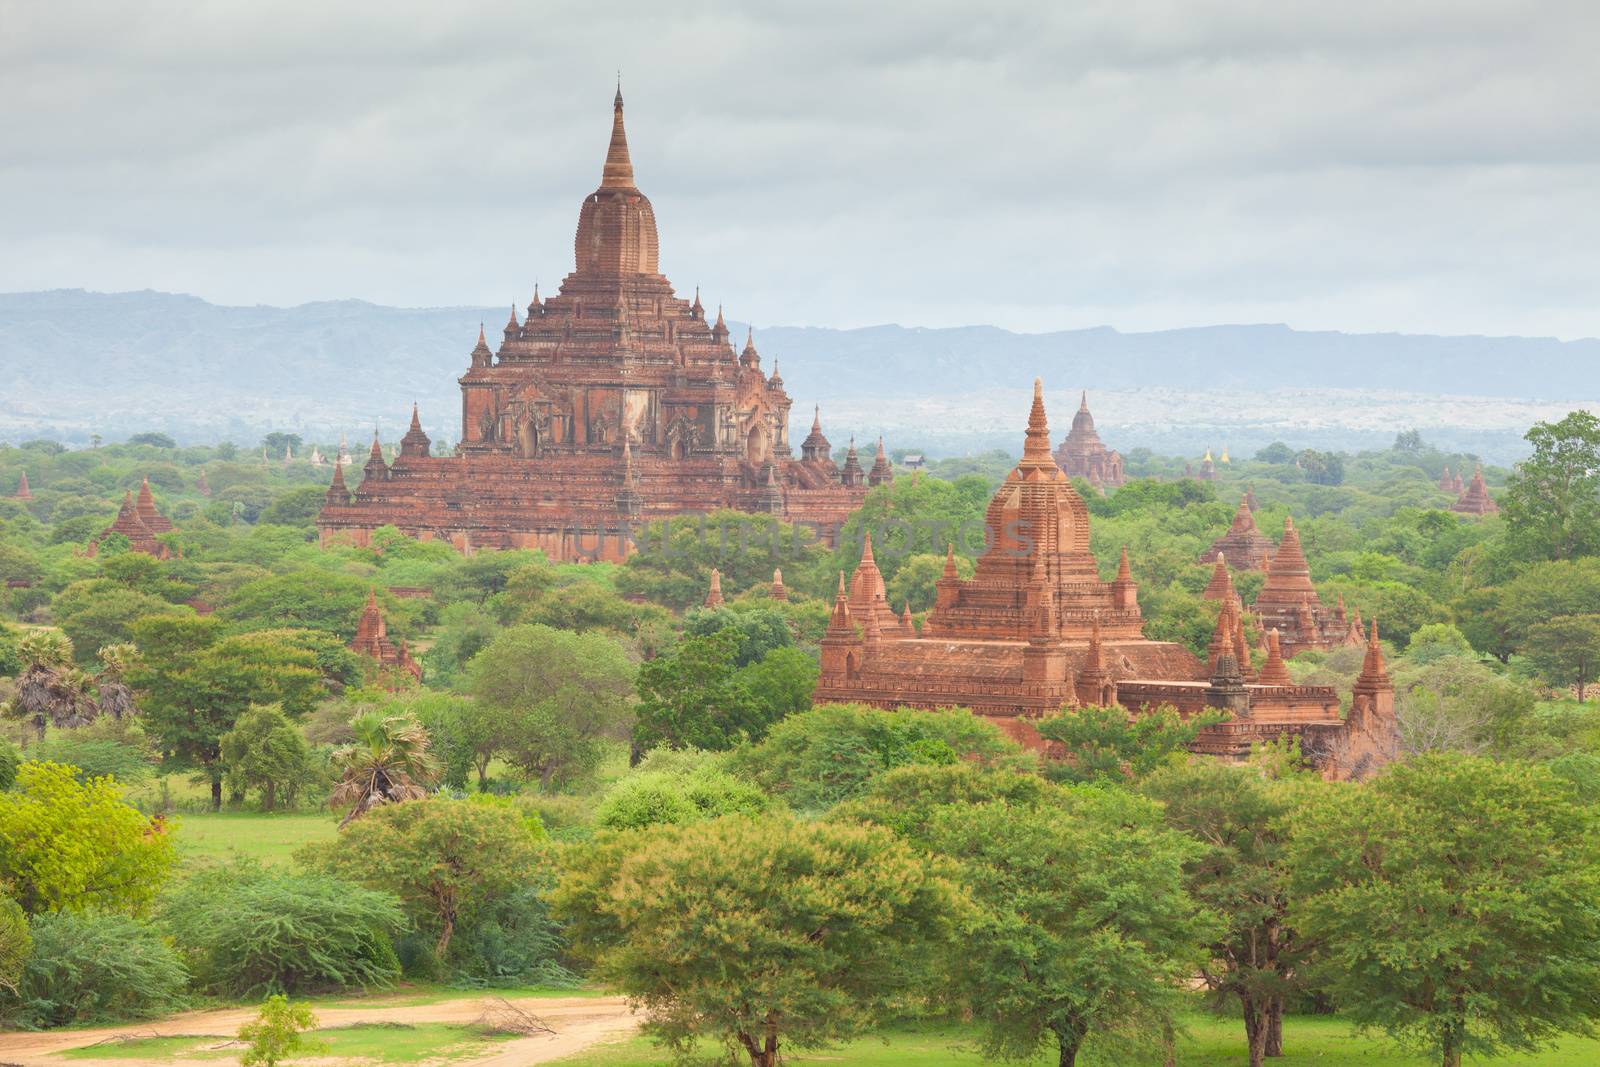 Ancient pagodas in Bagan Mandalay, Myanmar by witthaya